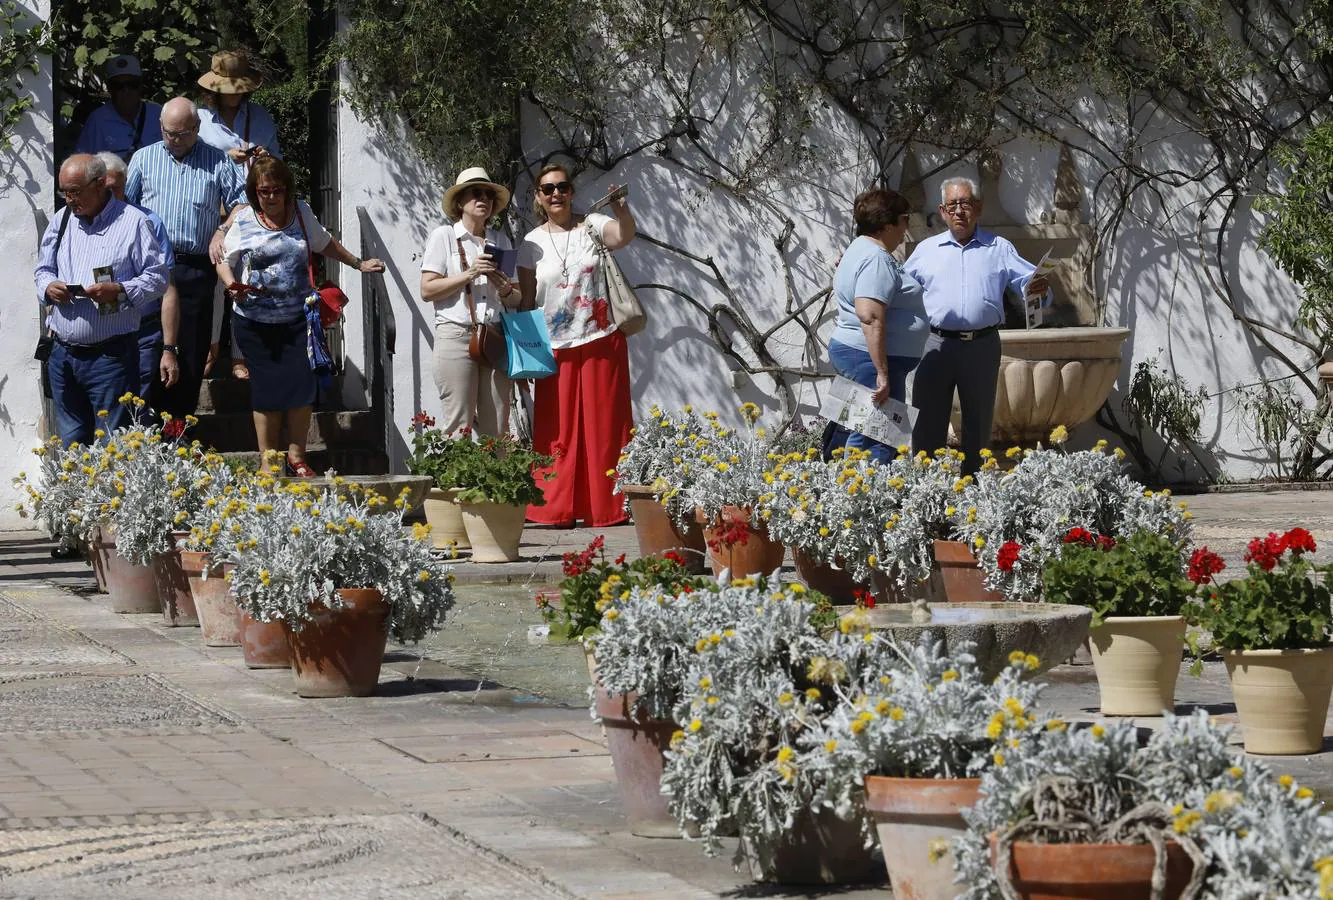 El asombro de los patios del Palacio de Viana de Córdoba, en imágenes